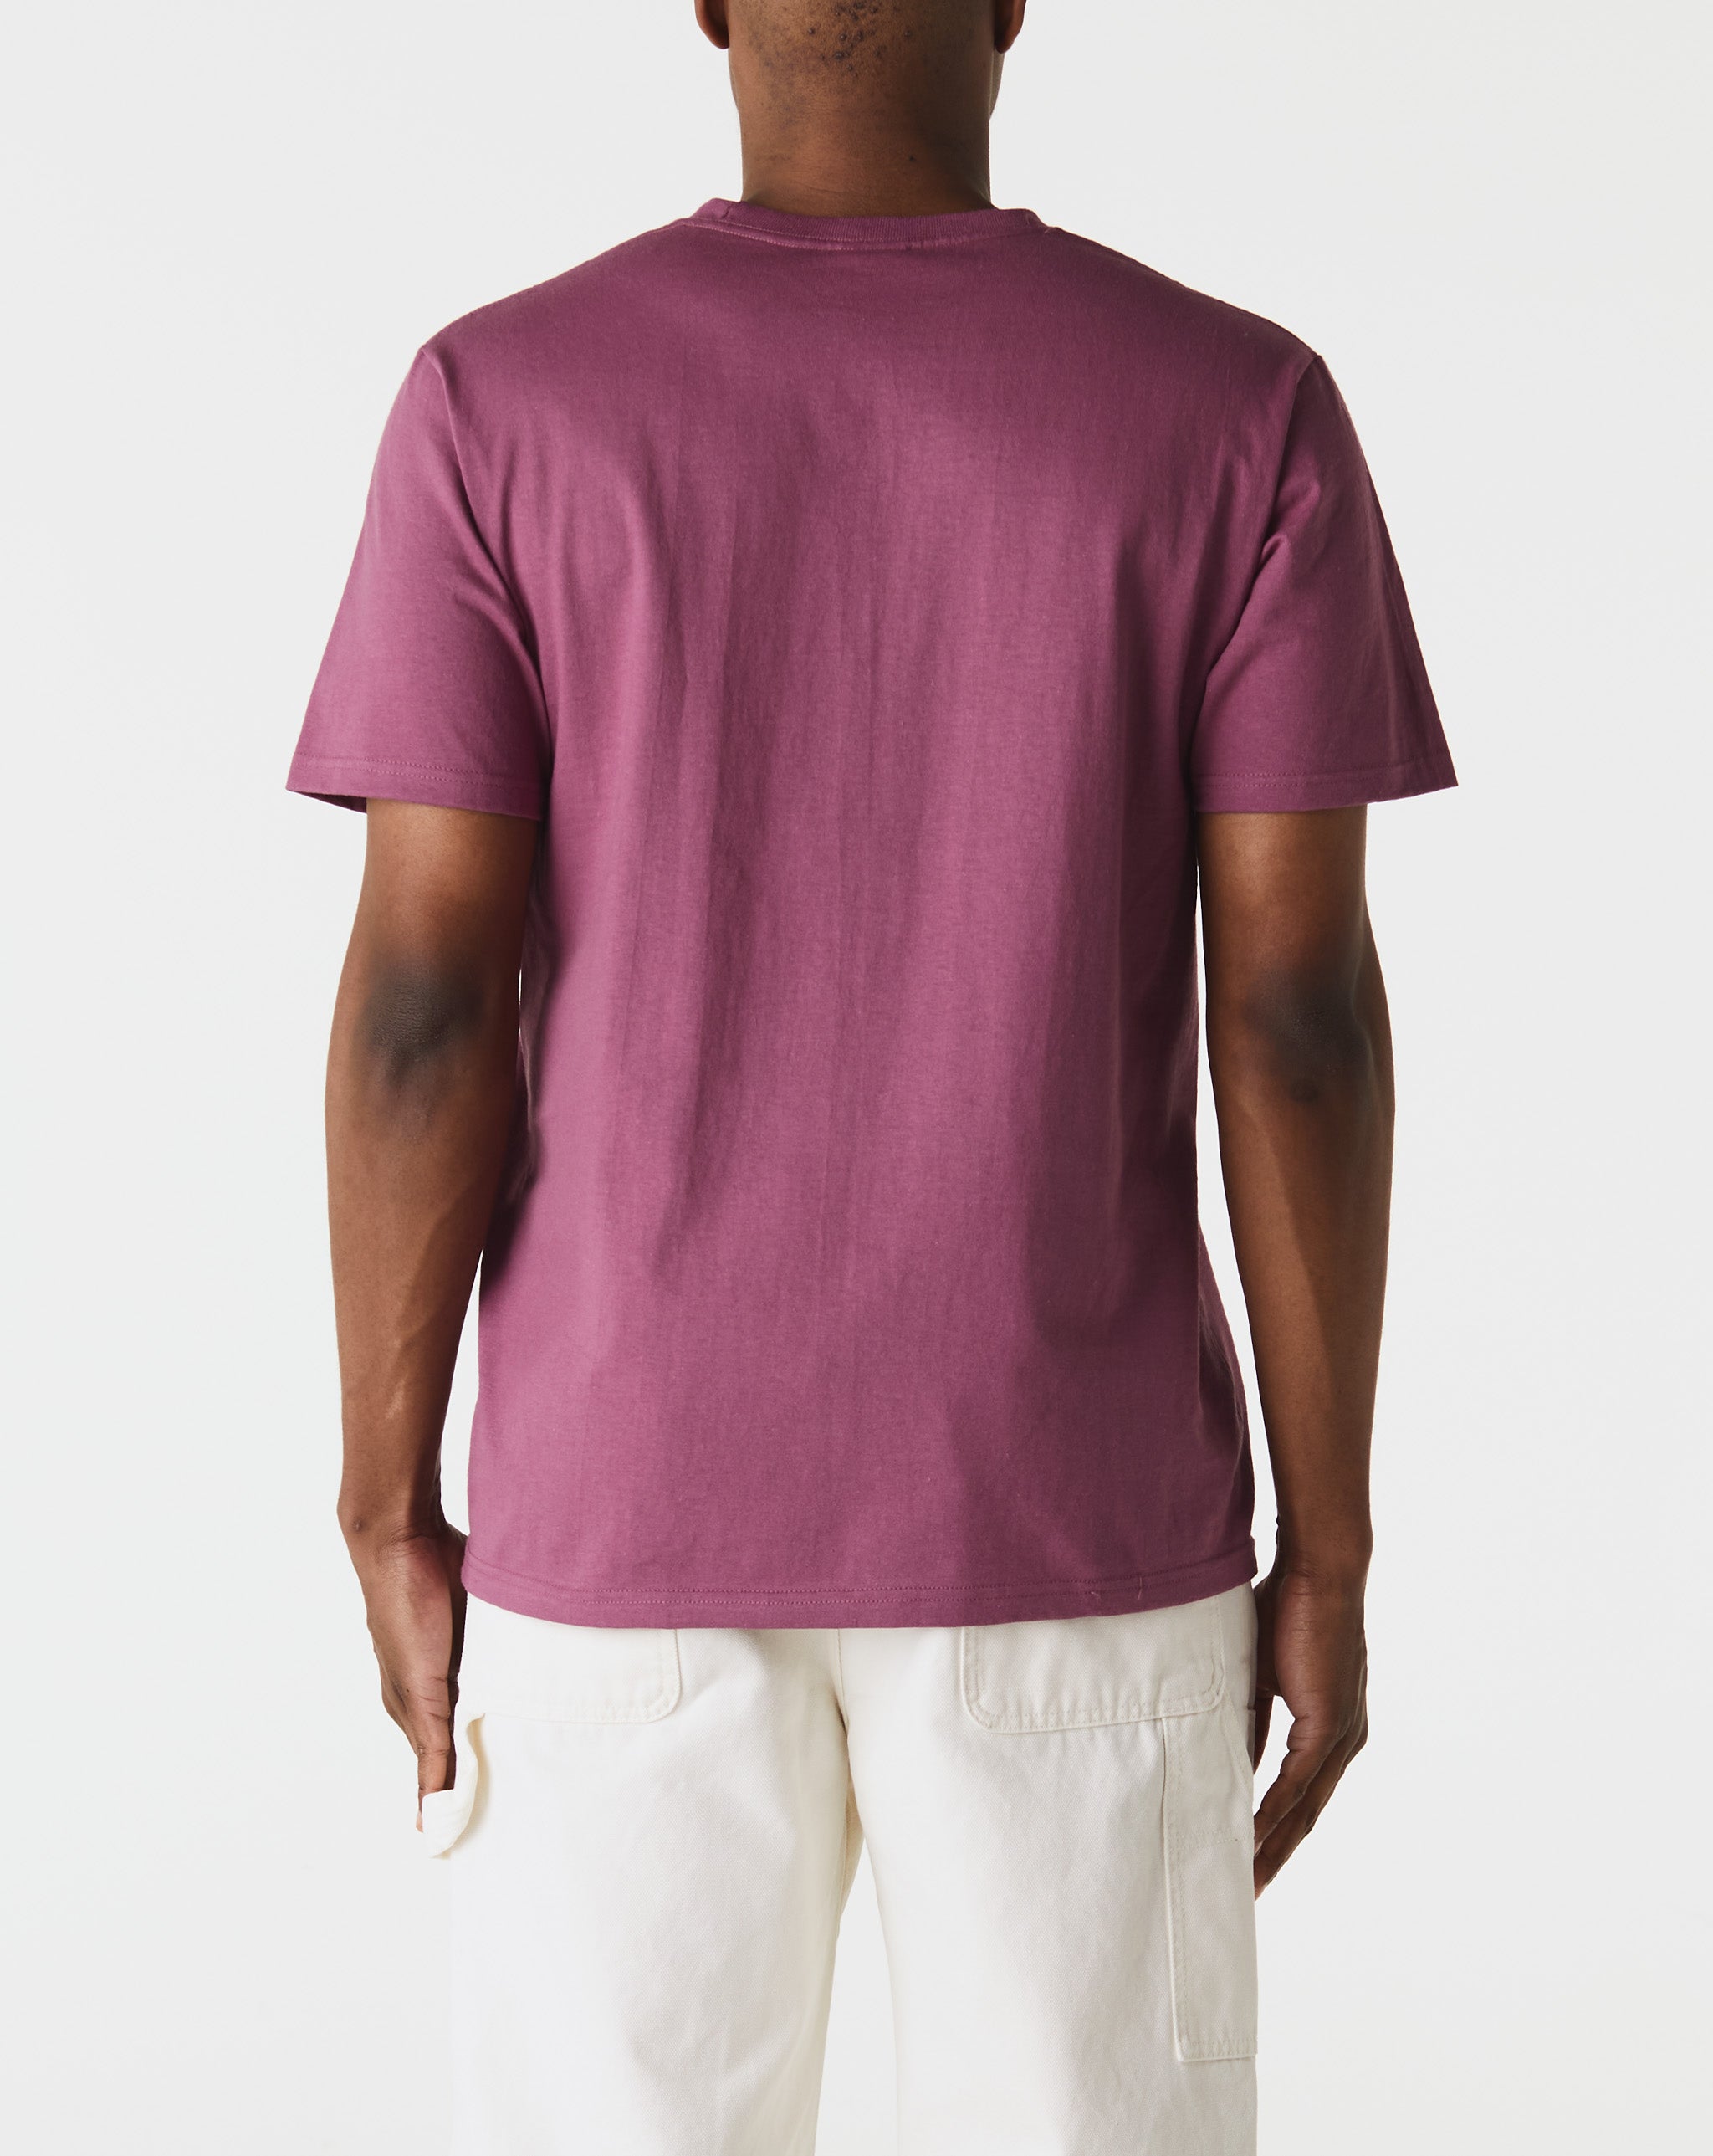 Stüssy Dobermans T-Shirt  - XHIBITION